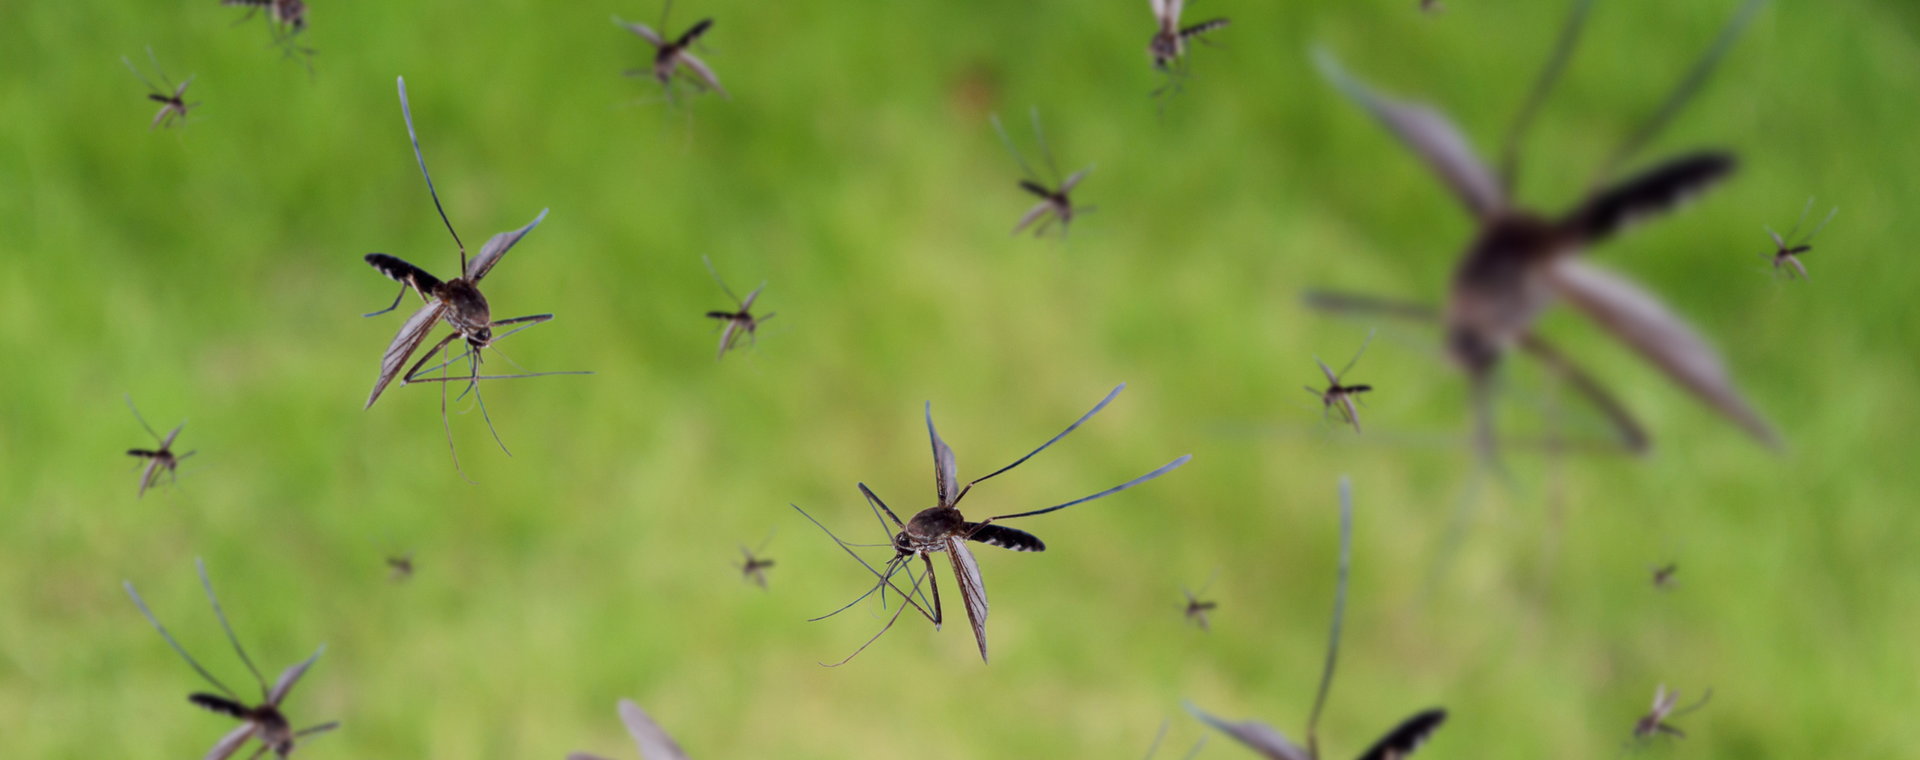 Szukasz sposobów na groźne kleszcze i komary? Podpowiadamy, co możesz zrobić